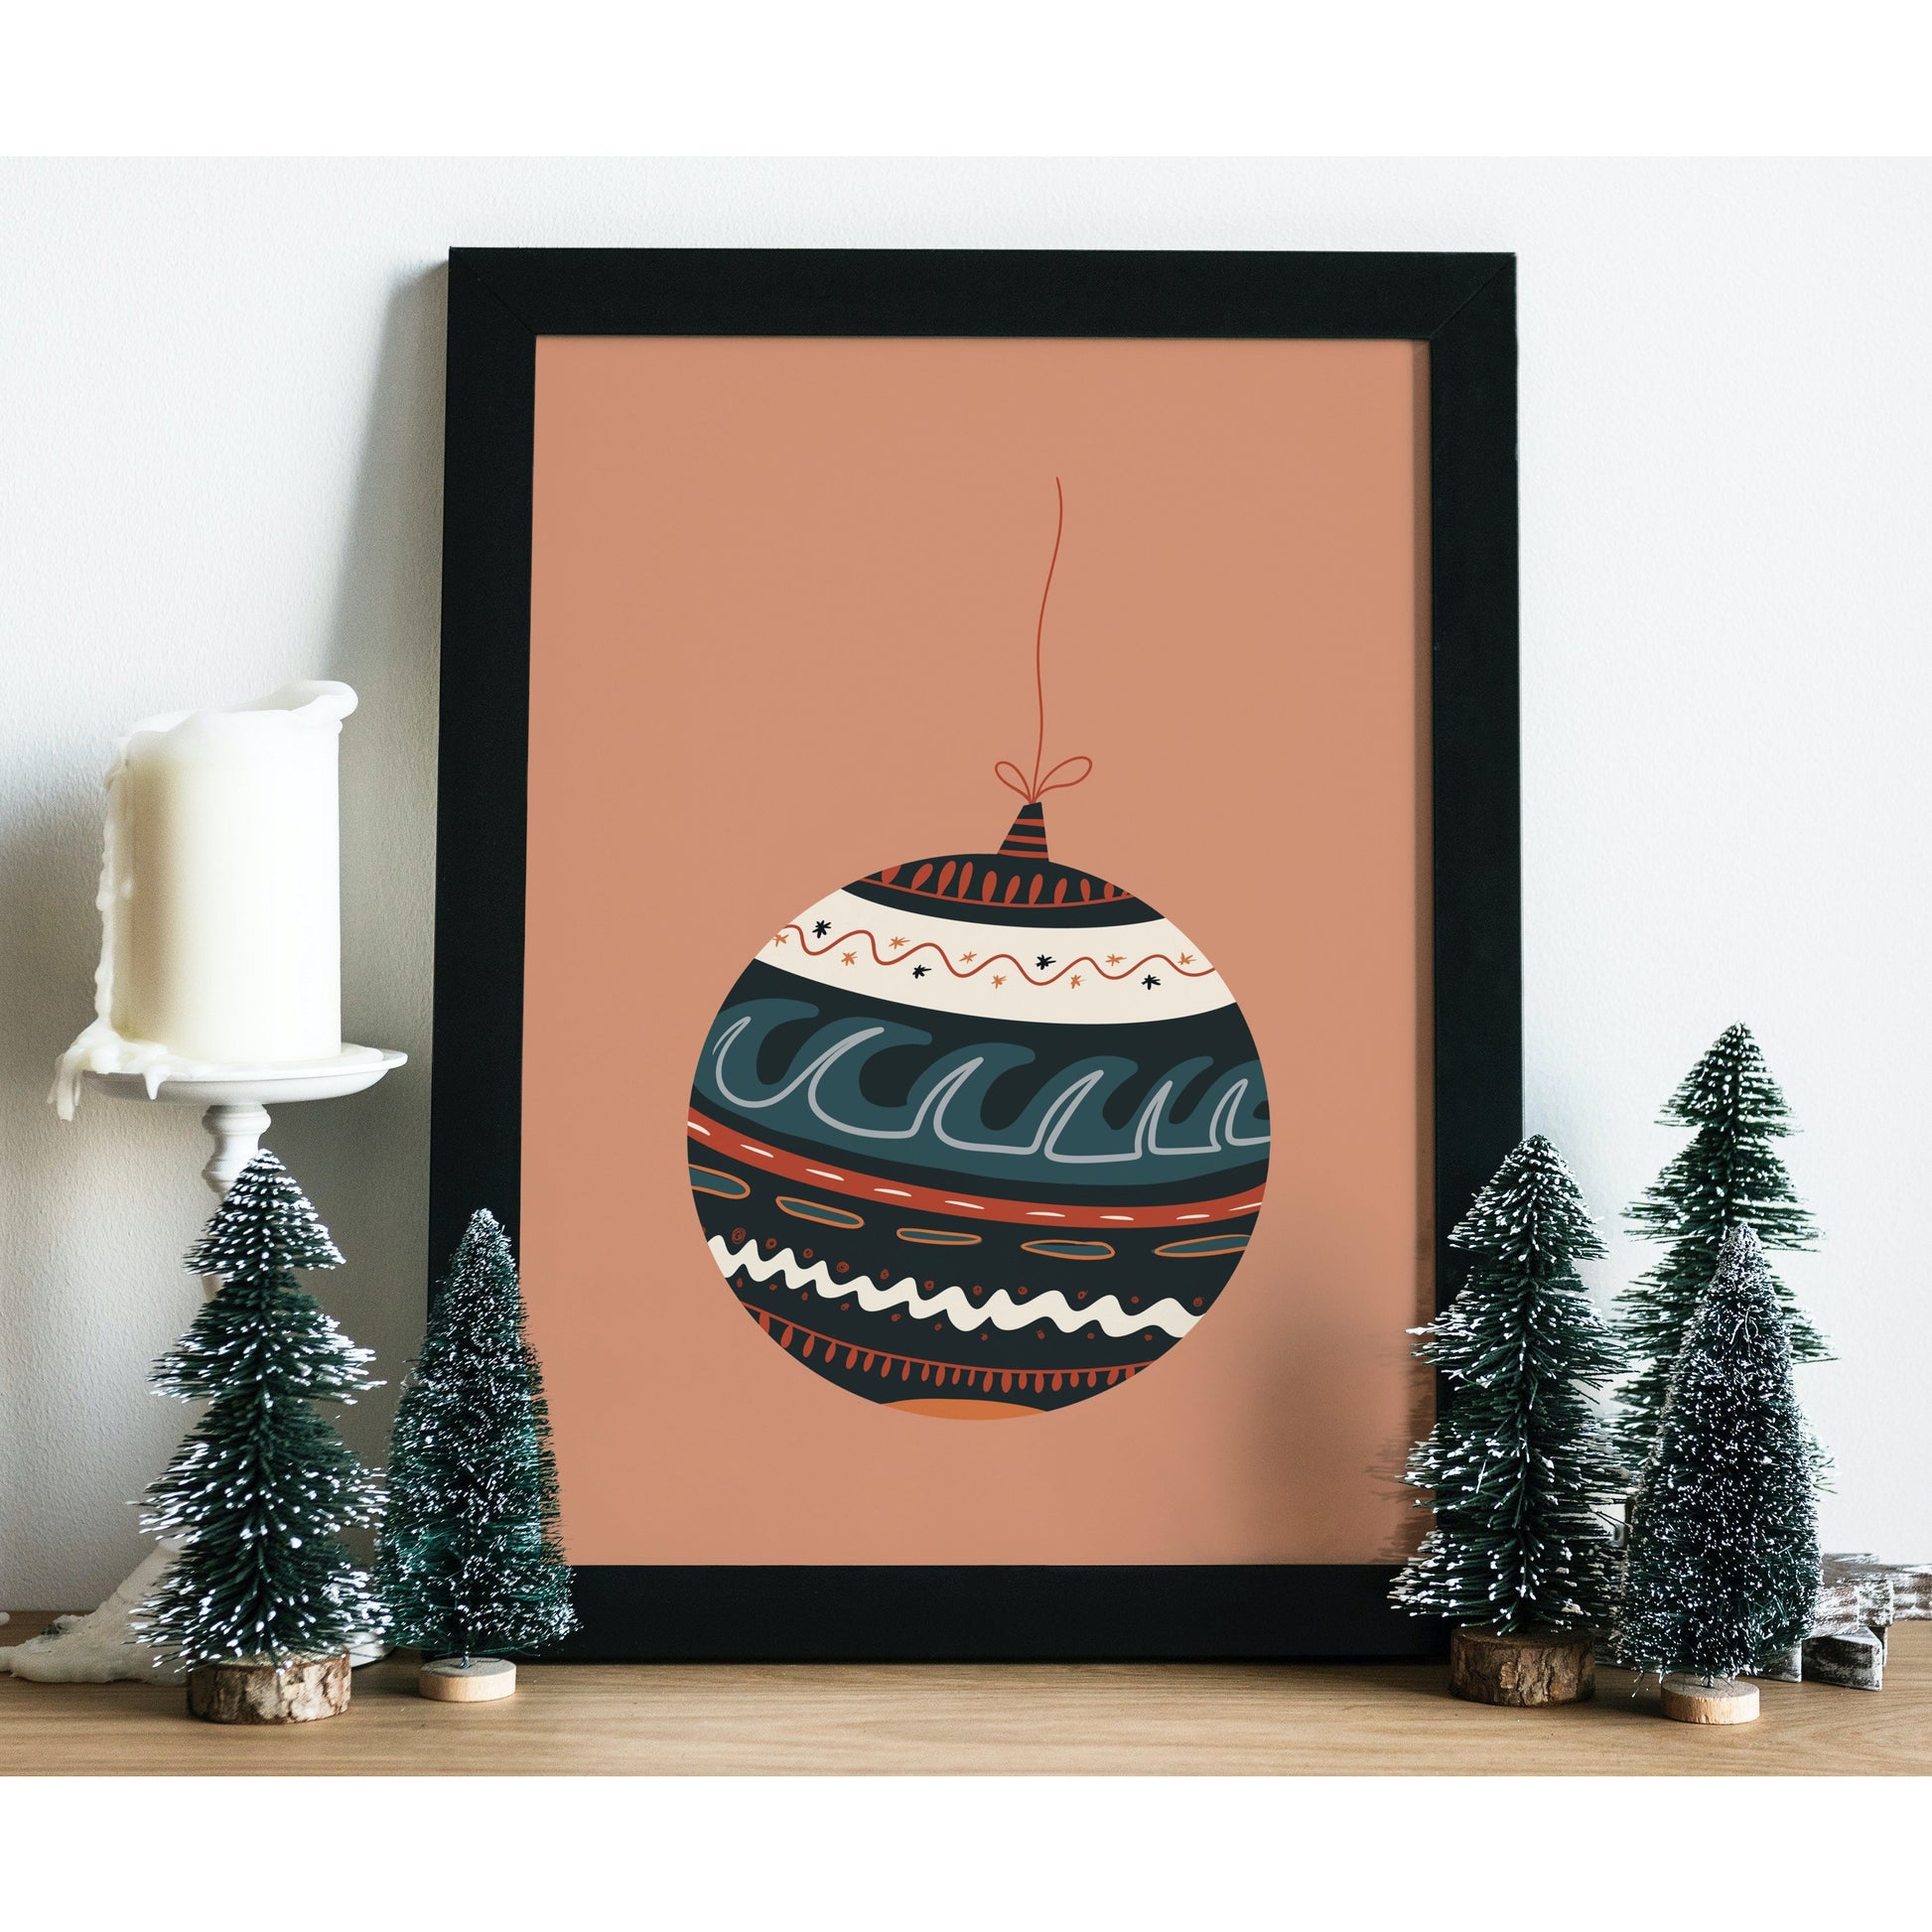 Boho Christmas Bauble Festive Print | Christmas gifts and decor ...